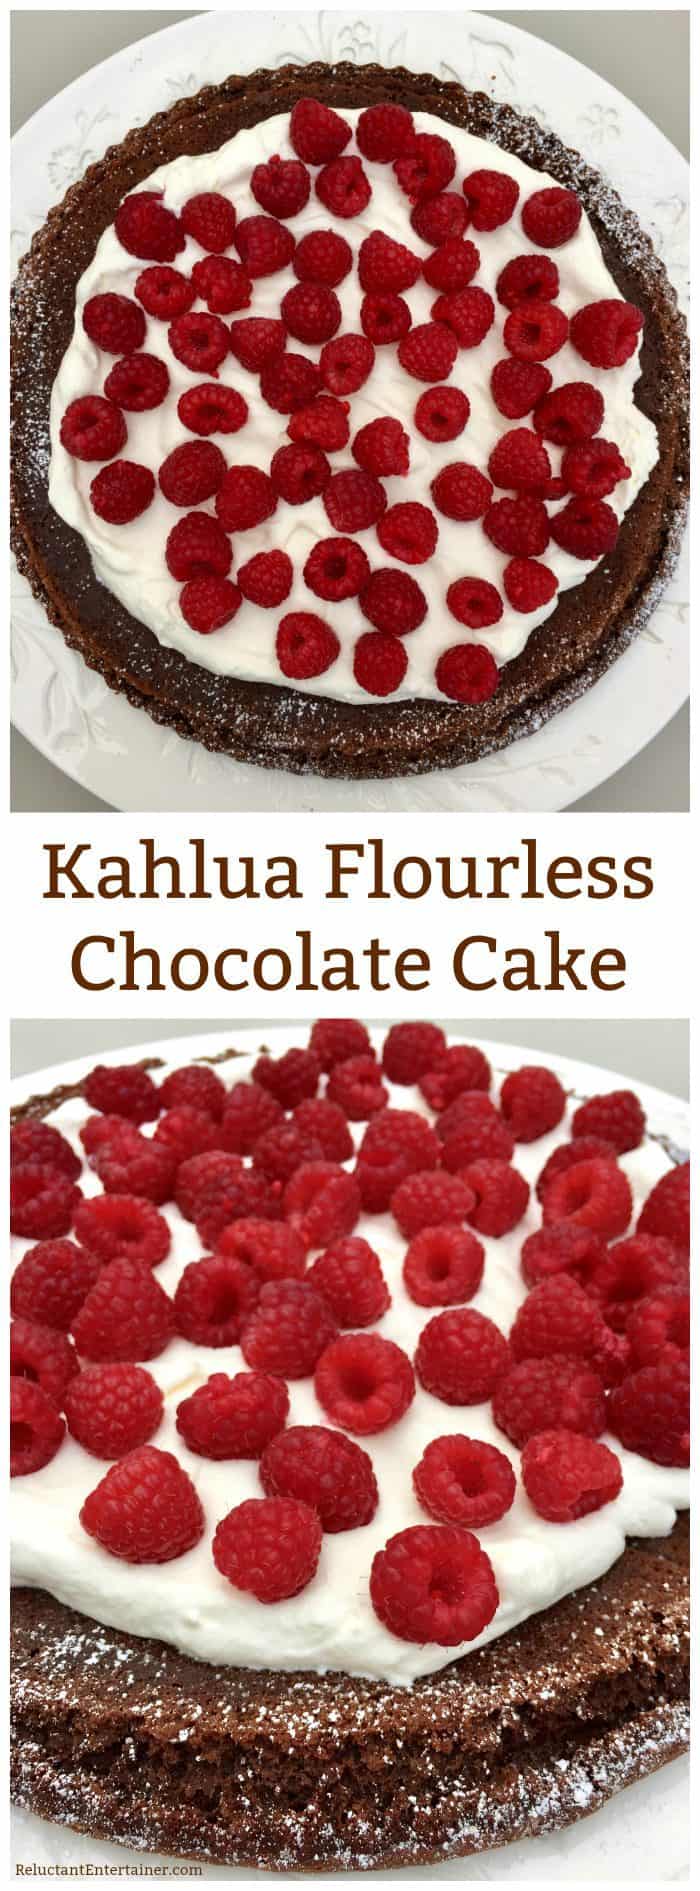 Kahlua Flourless Chocolate Cake